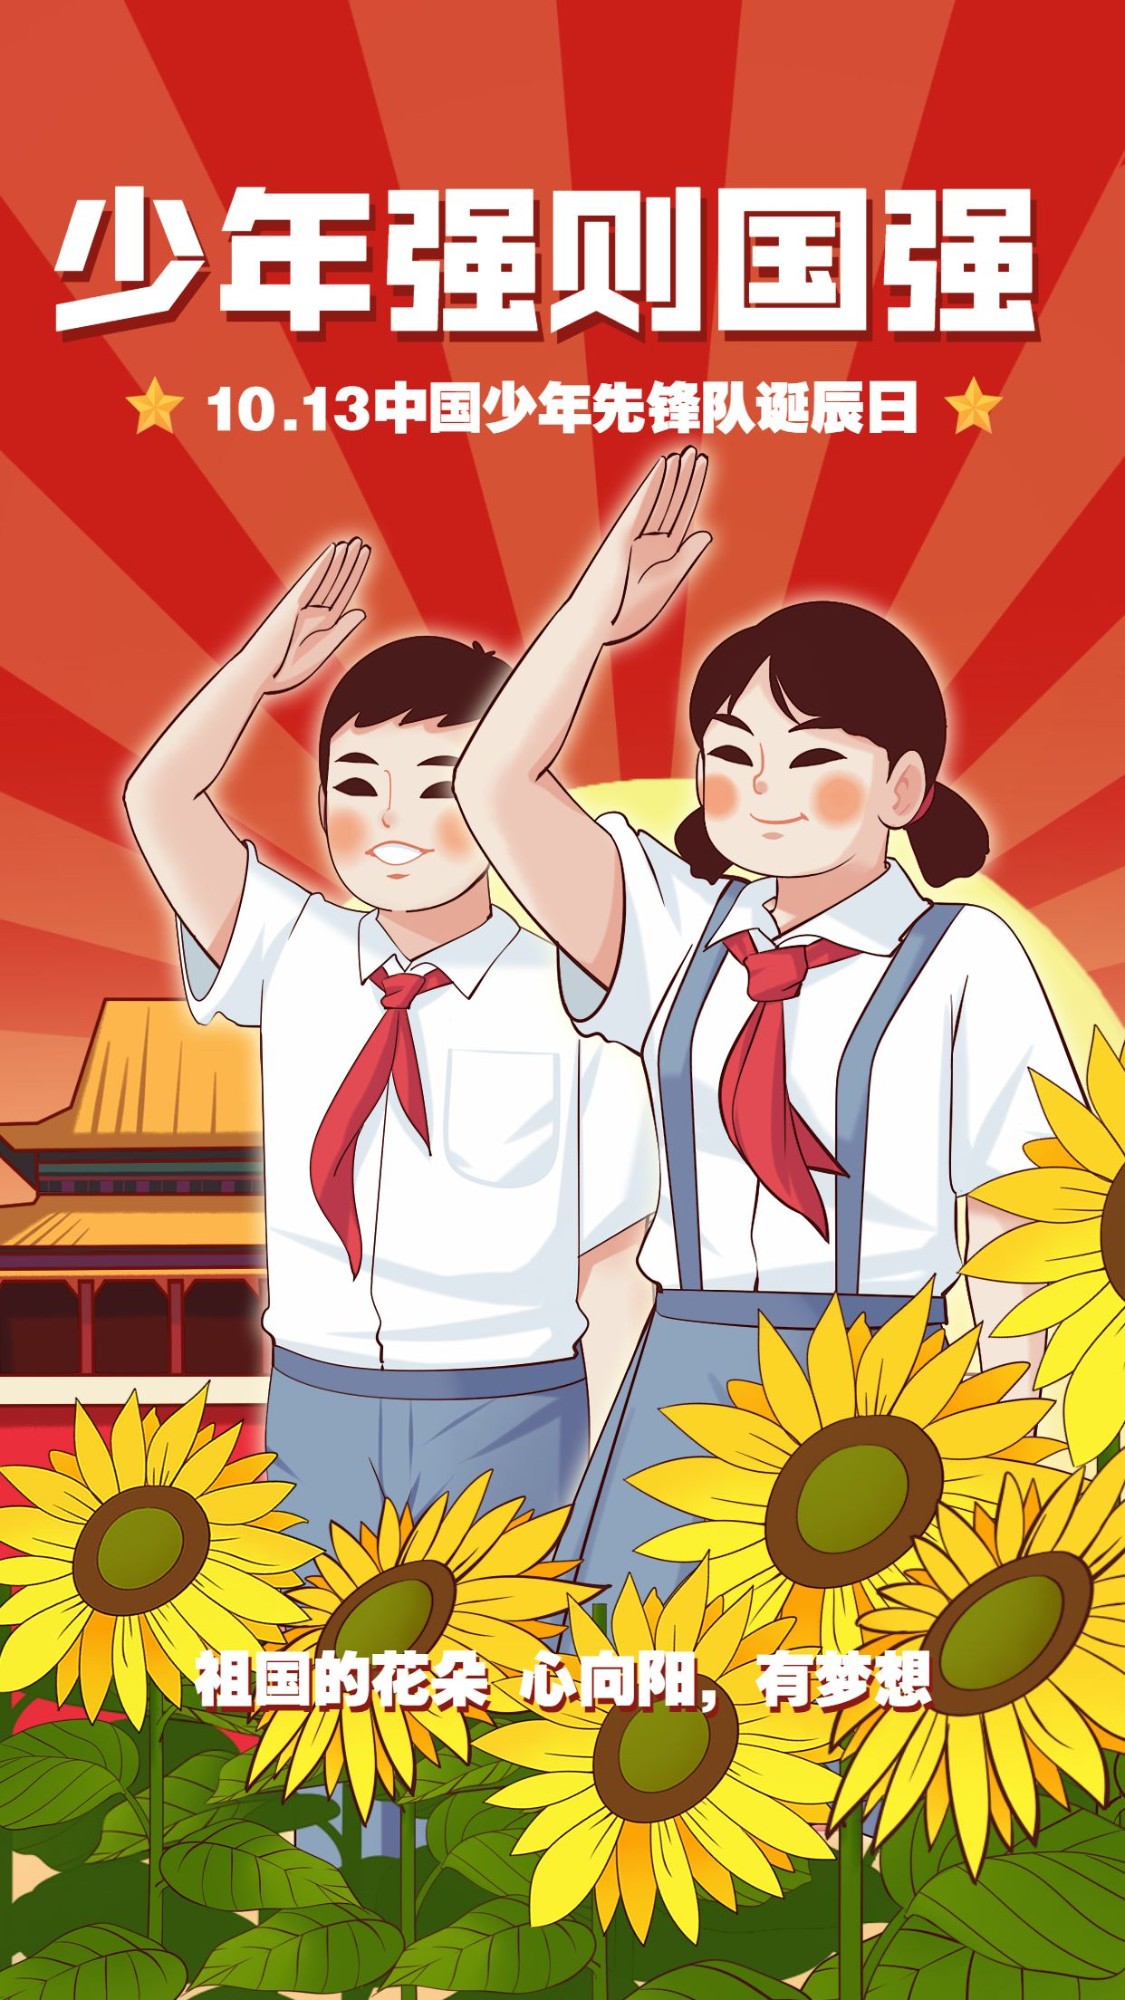 中国少年先锋队诞辰日学生手绘海报